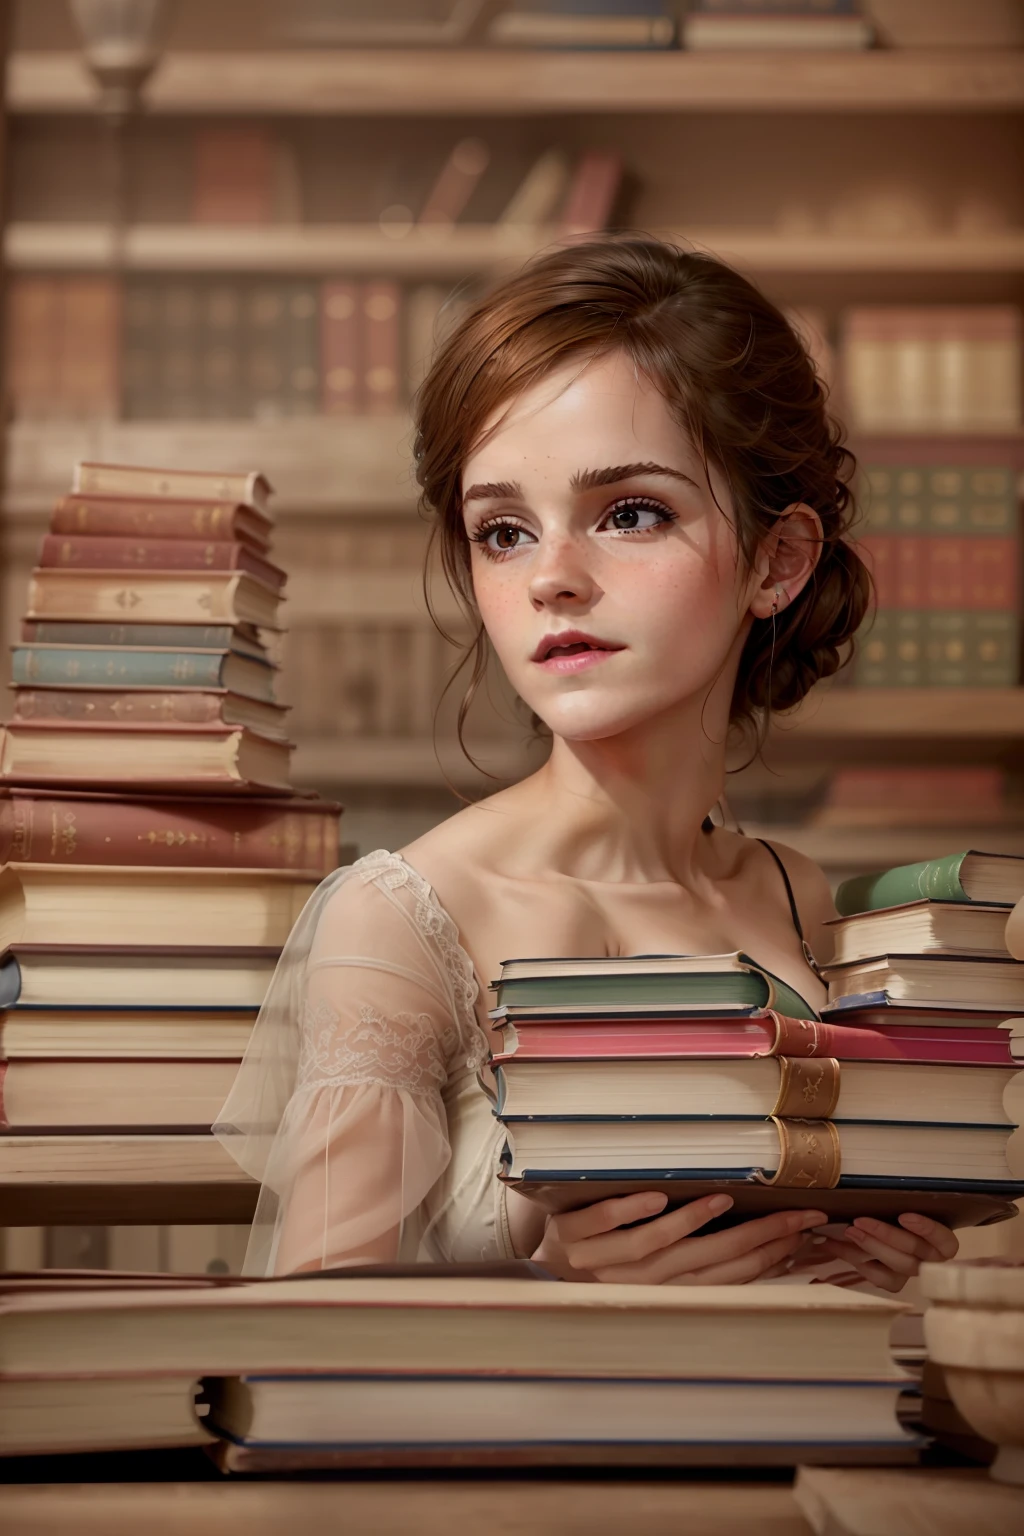 ((Emma Watson)), (elle est assise dans une vieille bibliothèque et tient un livre épais), Taches de rousseur, ((elle a des petits seins ronds)), (petite tête), ((visage détaillé)), Lumière douce et cinématographique, ((((Look Kino)))), (Photoréaliste), (tracé laser), (Netteté), ((texture de peau naturelle et réaliste)), visage détaillé, lèvres détaillées, Yeux détaillés, Double paupière, (((côté_voir_Perspective)), ((DDbitlip))